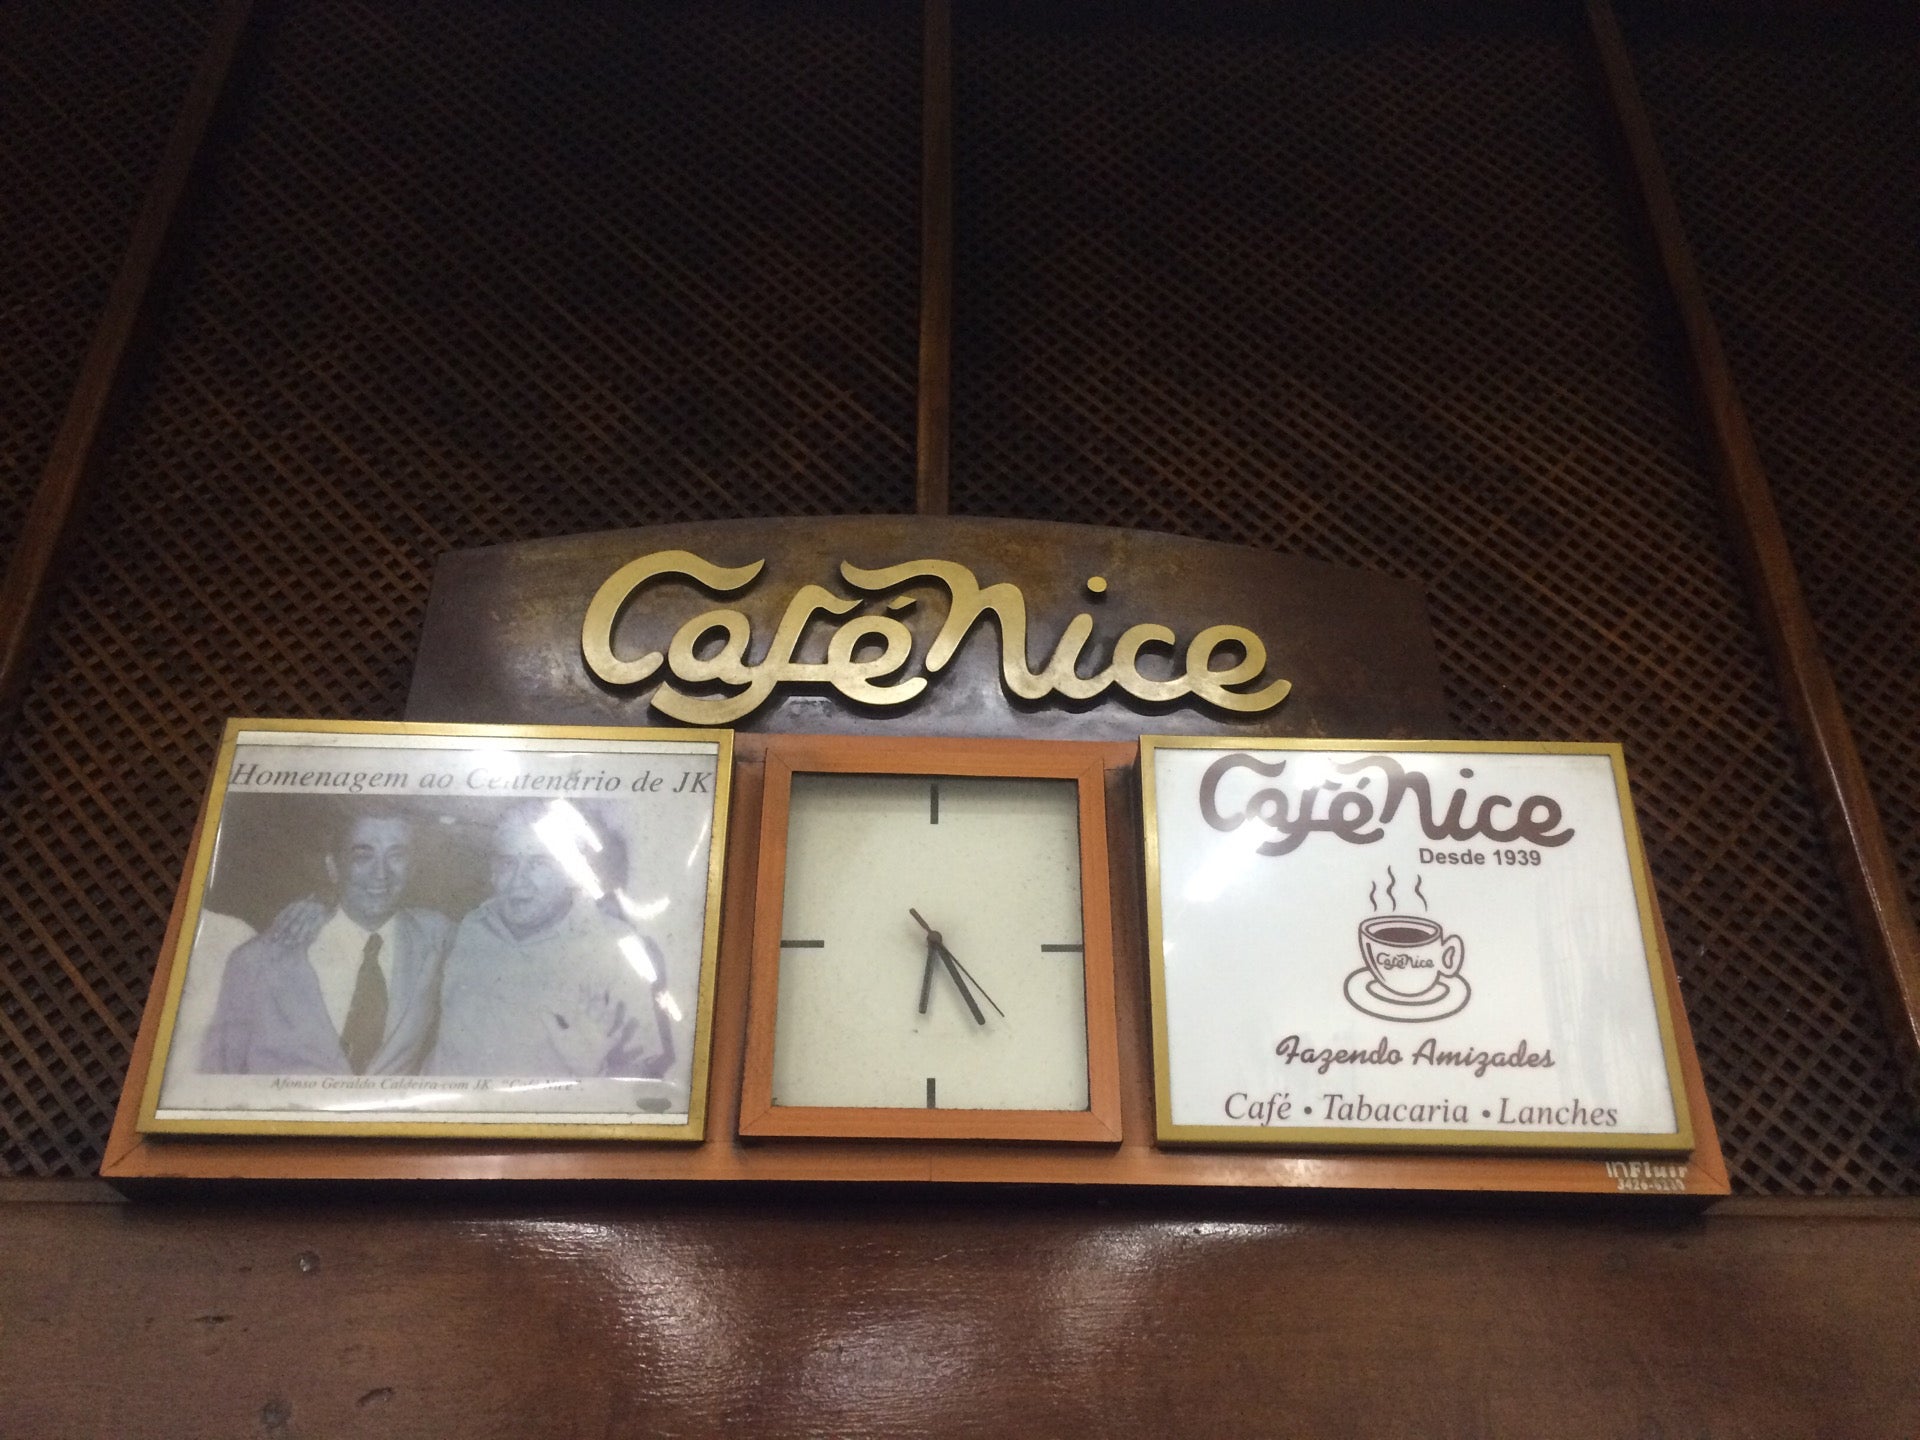 Café Nice